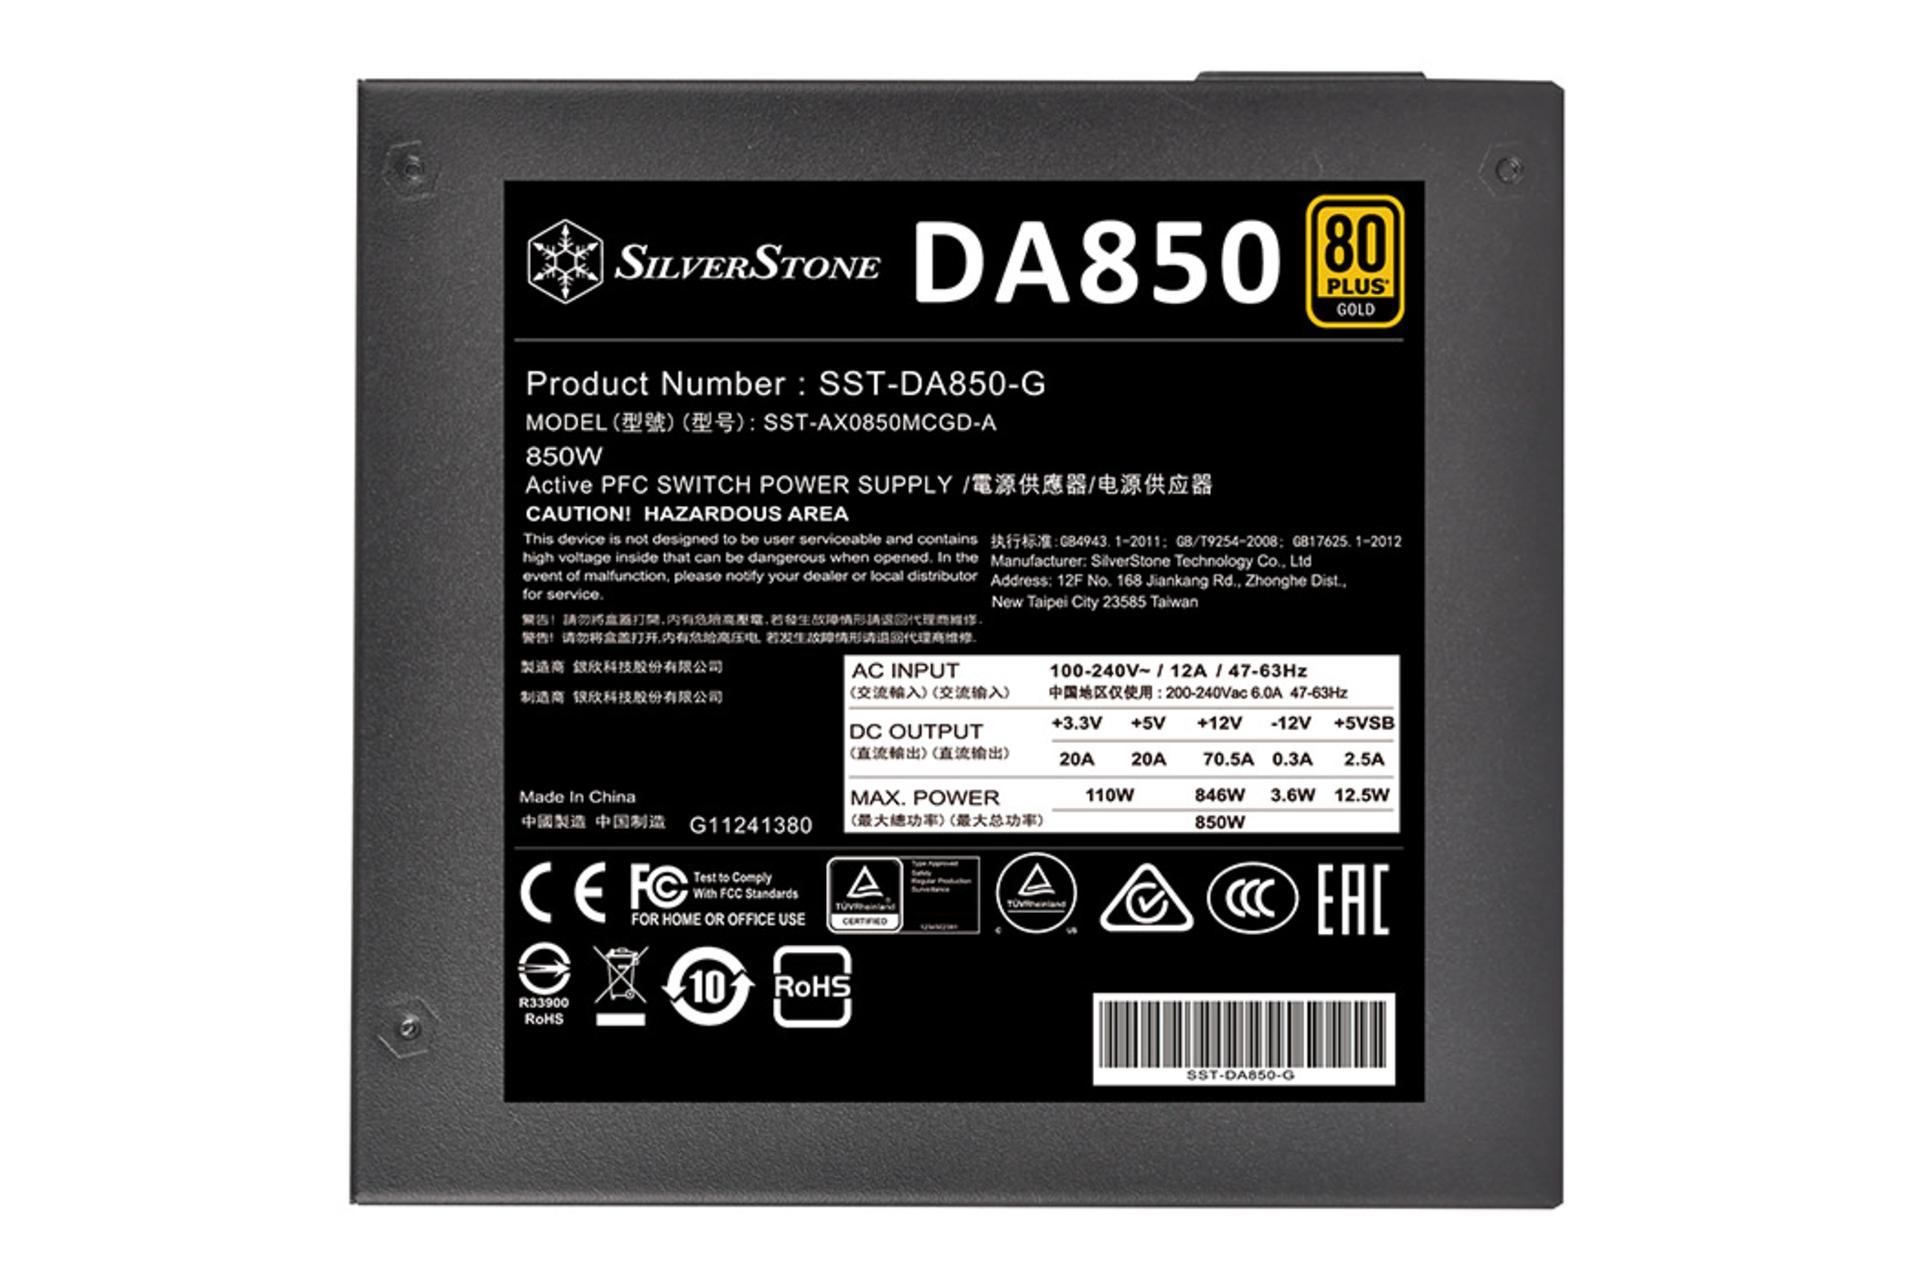 پاور کامپیوتر سیلور استون DA850 Gold با توان 850 وات برچسب مشخصات